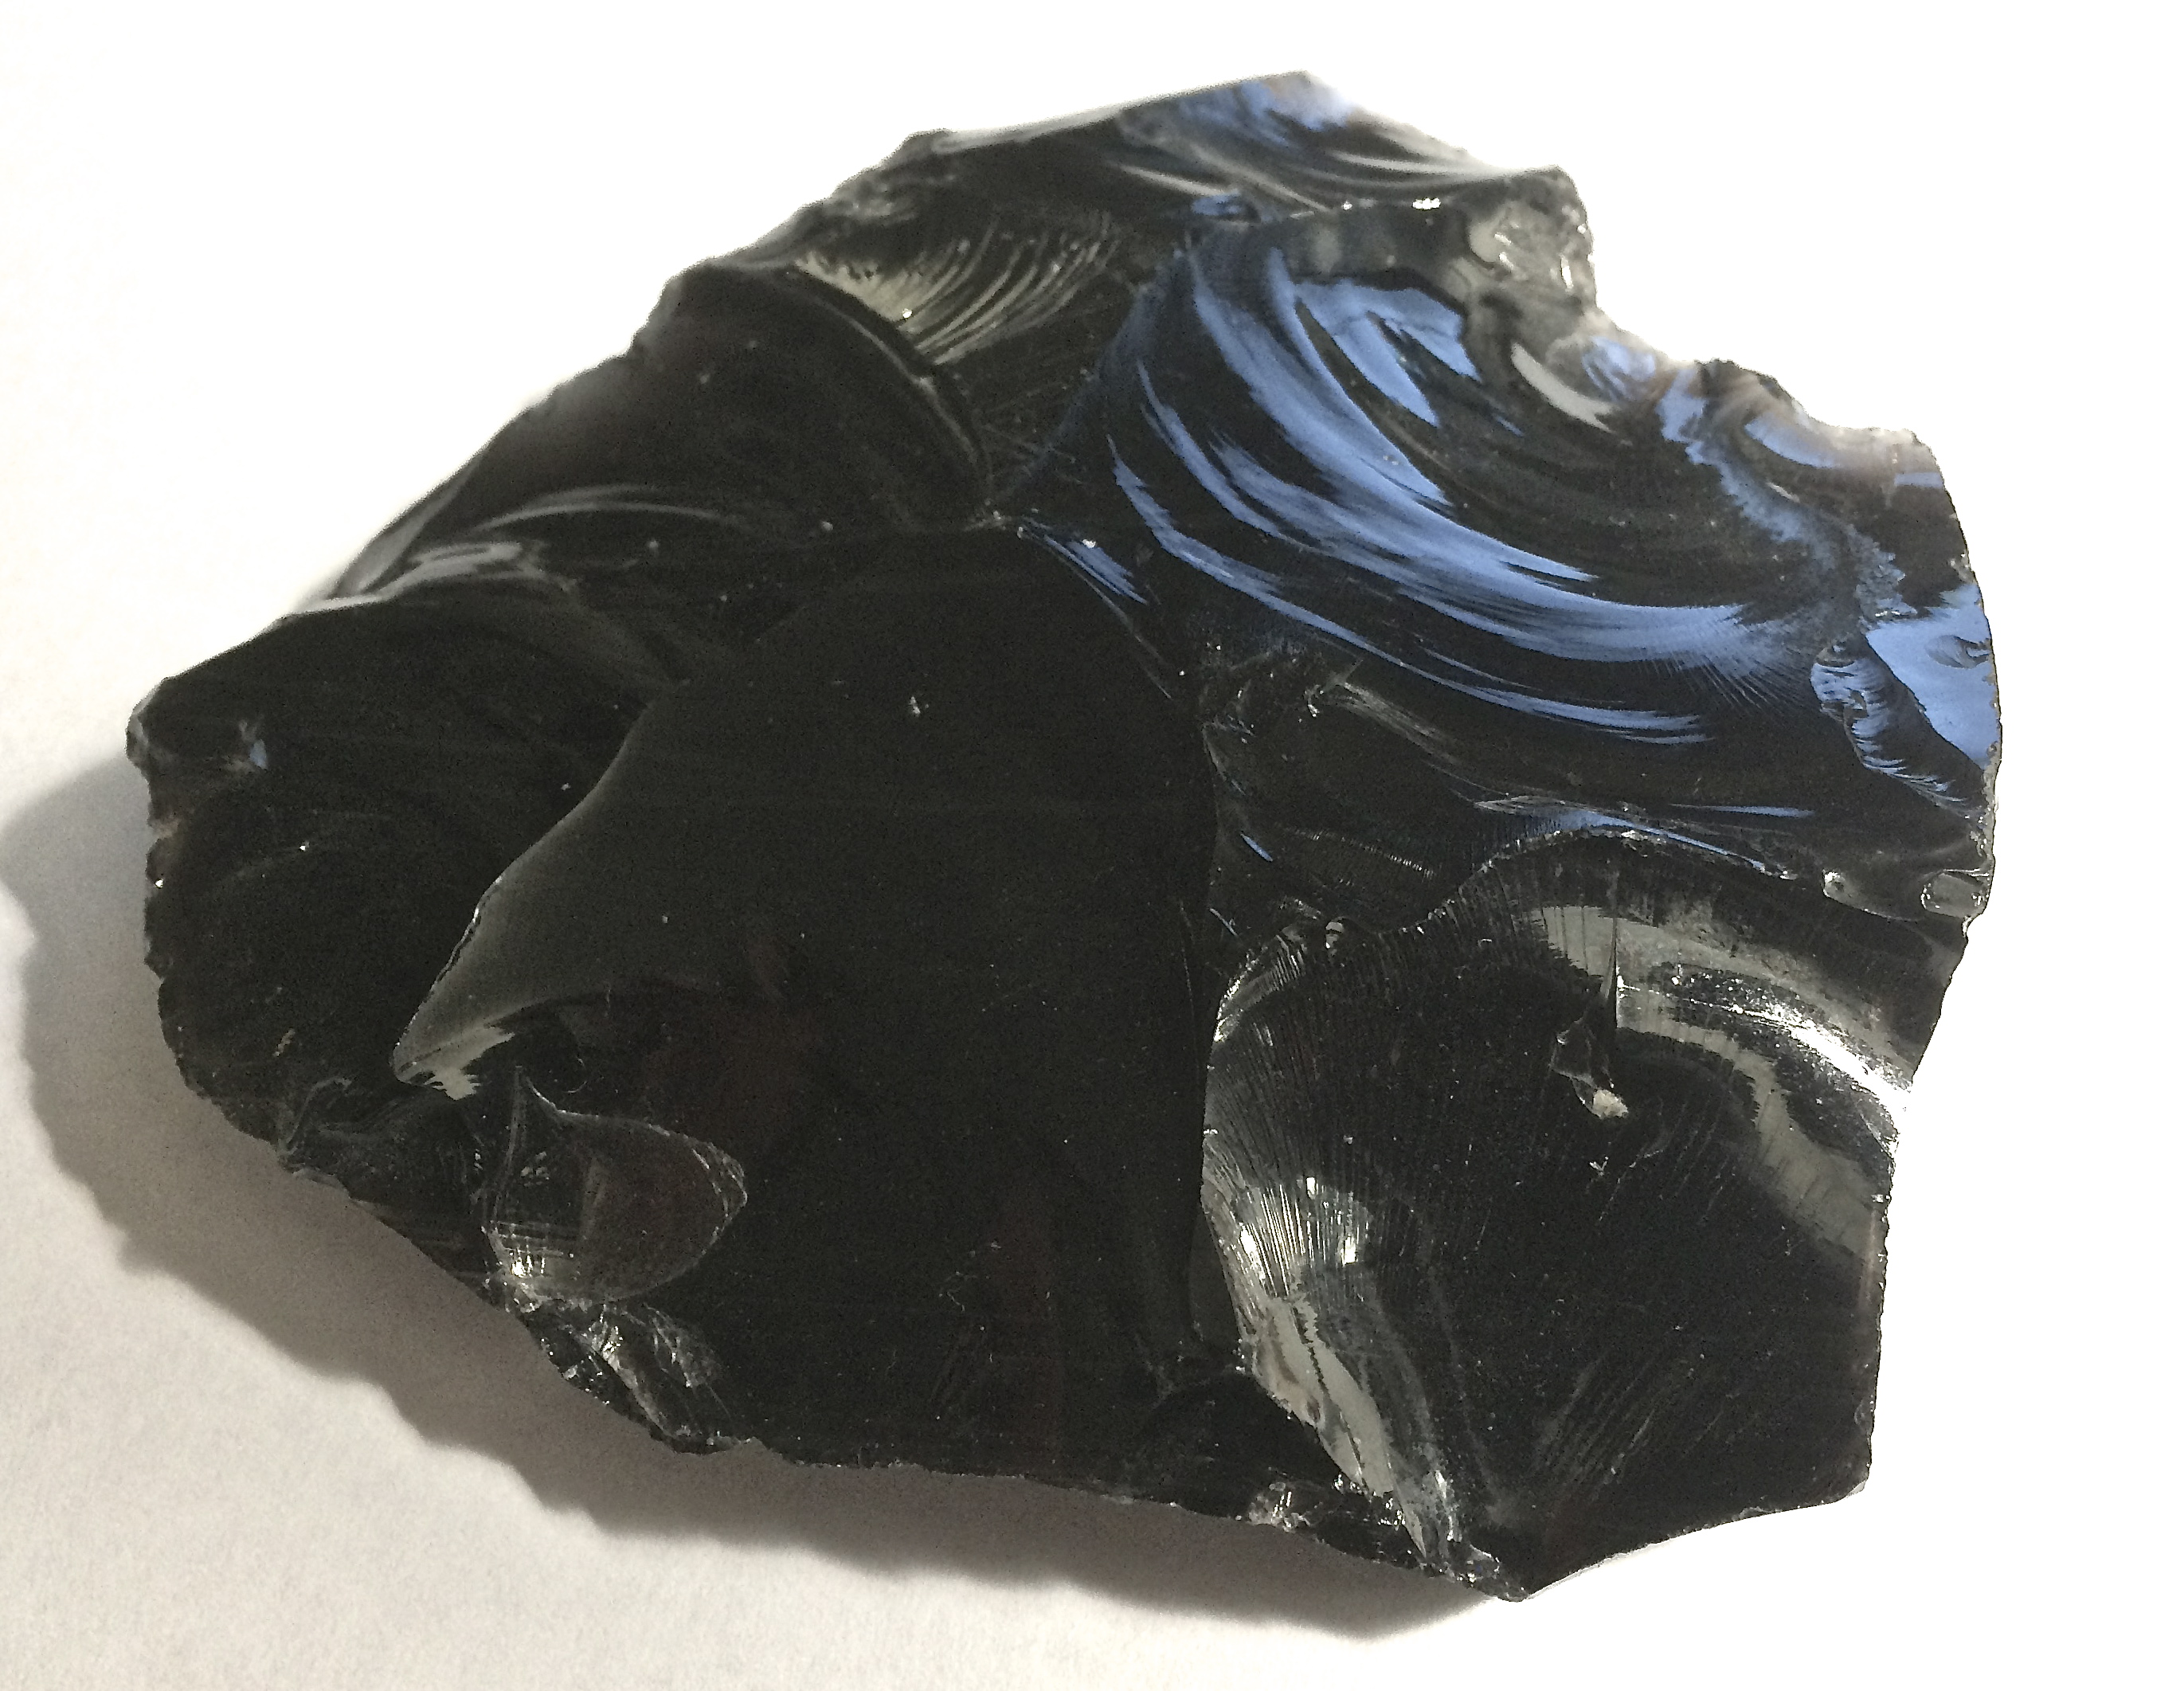 obsidian scalpel vs steel micro